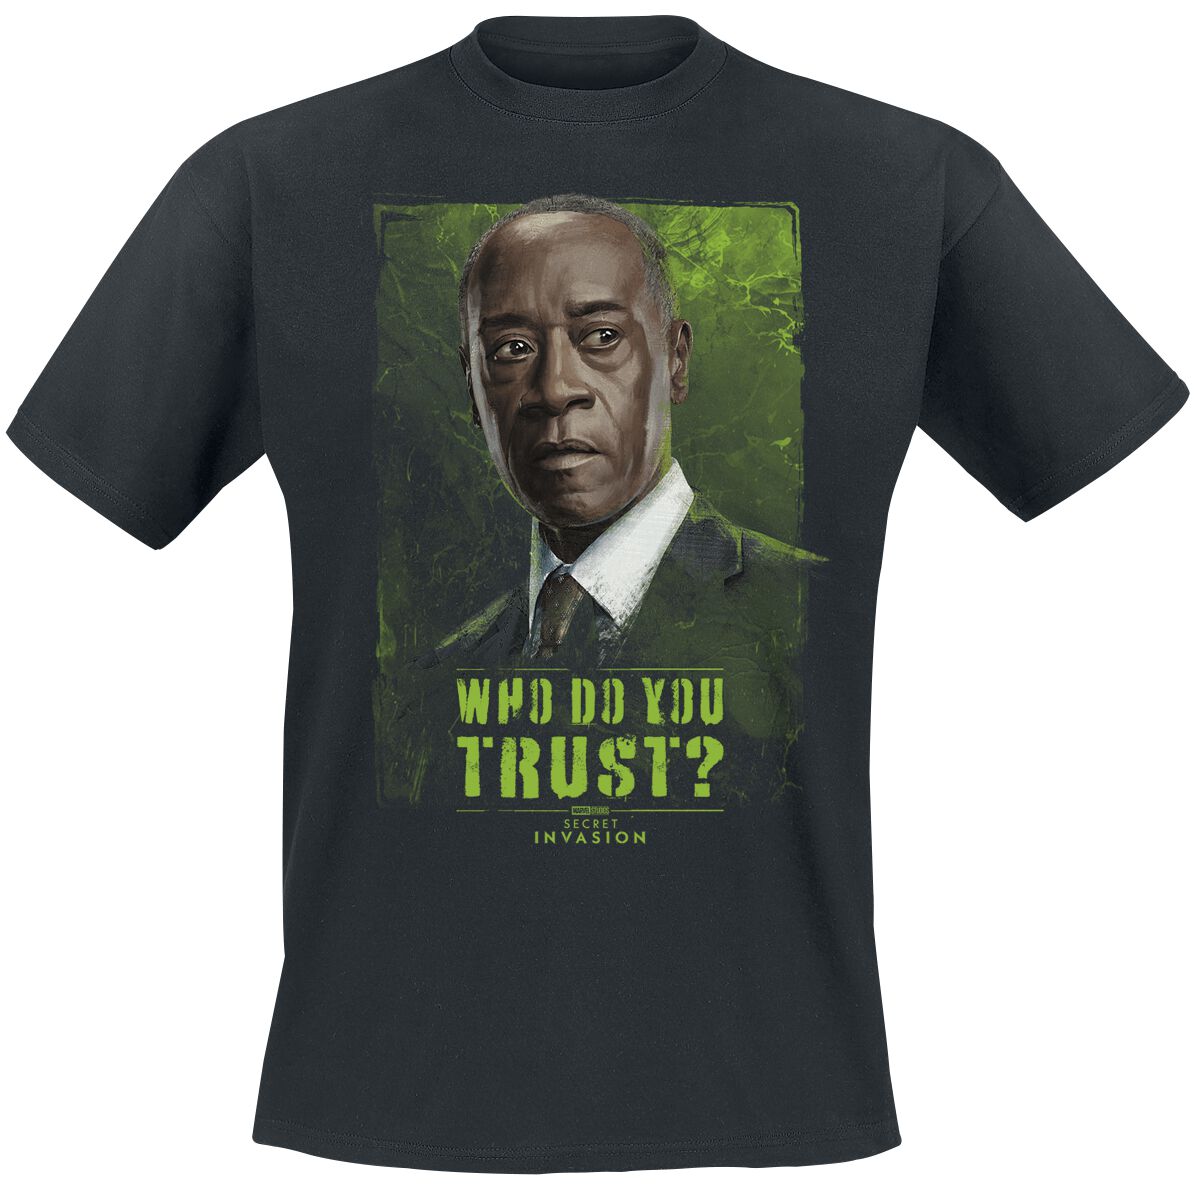 Secret Invasion - Marvel T-Shirt - Who Do You Trust? James - S bis 3XL - für Männer - Größe XL - schwarz  - EMP exklusives Merchandise!